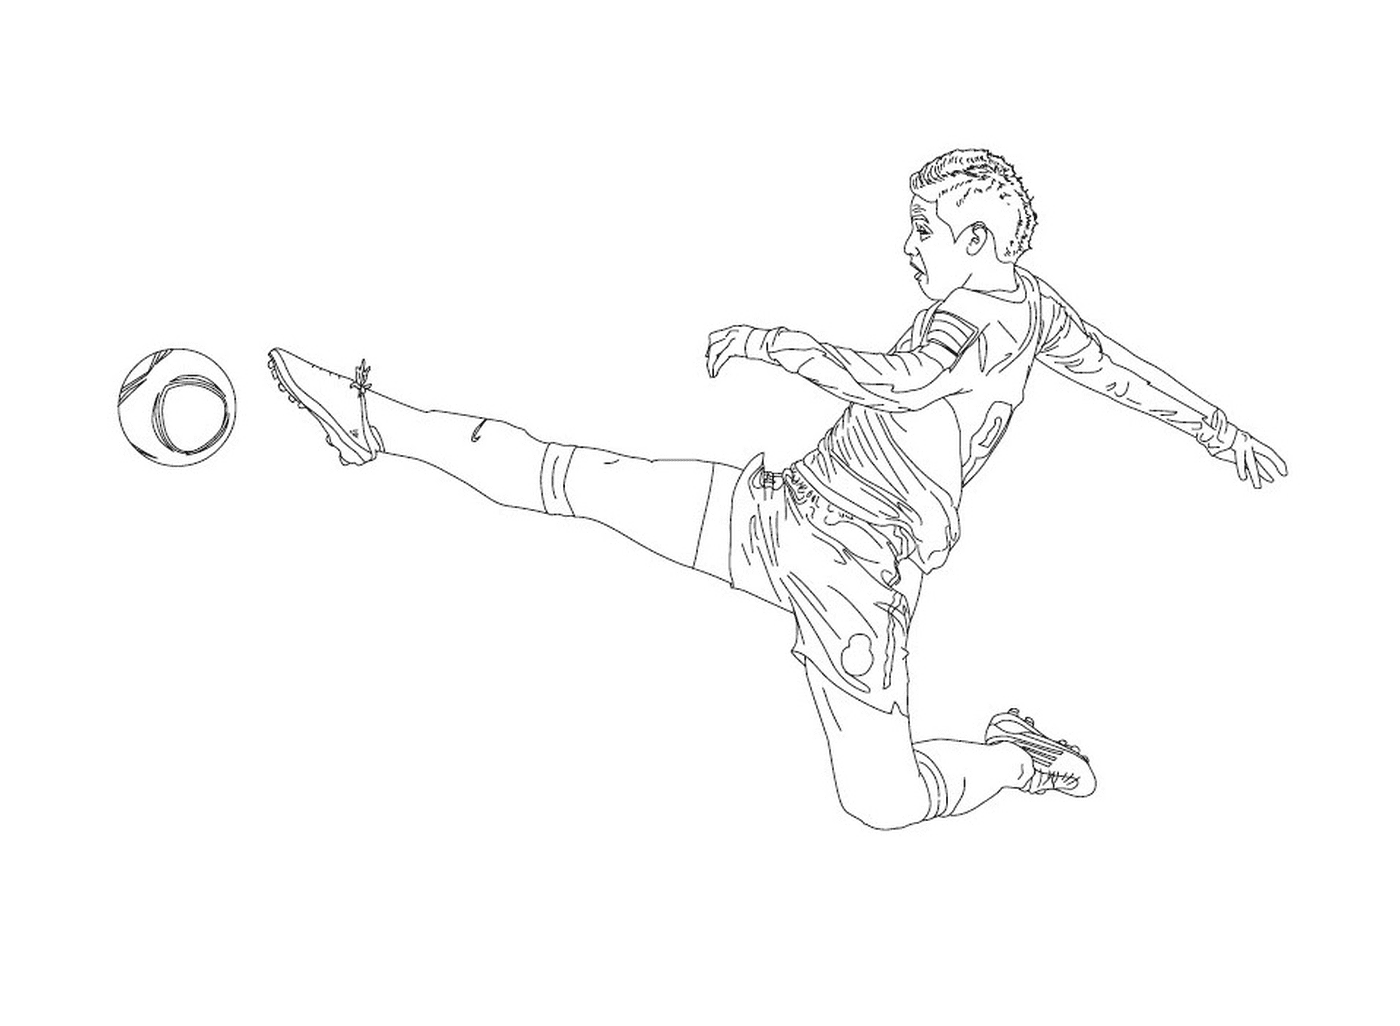 Ein Junge tritt in einen Fußball